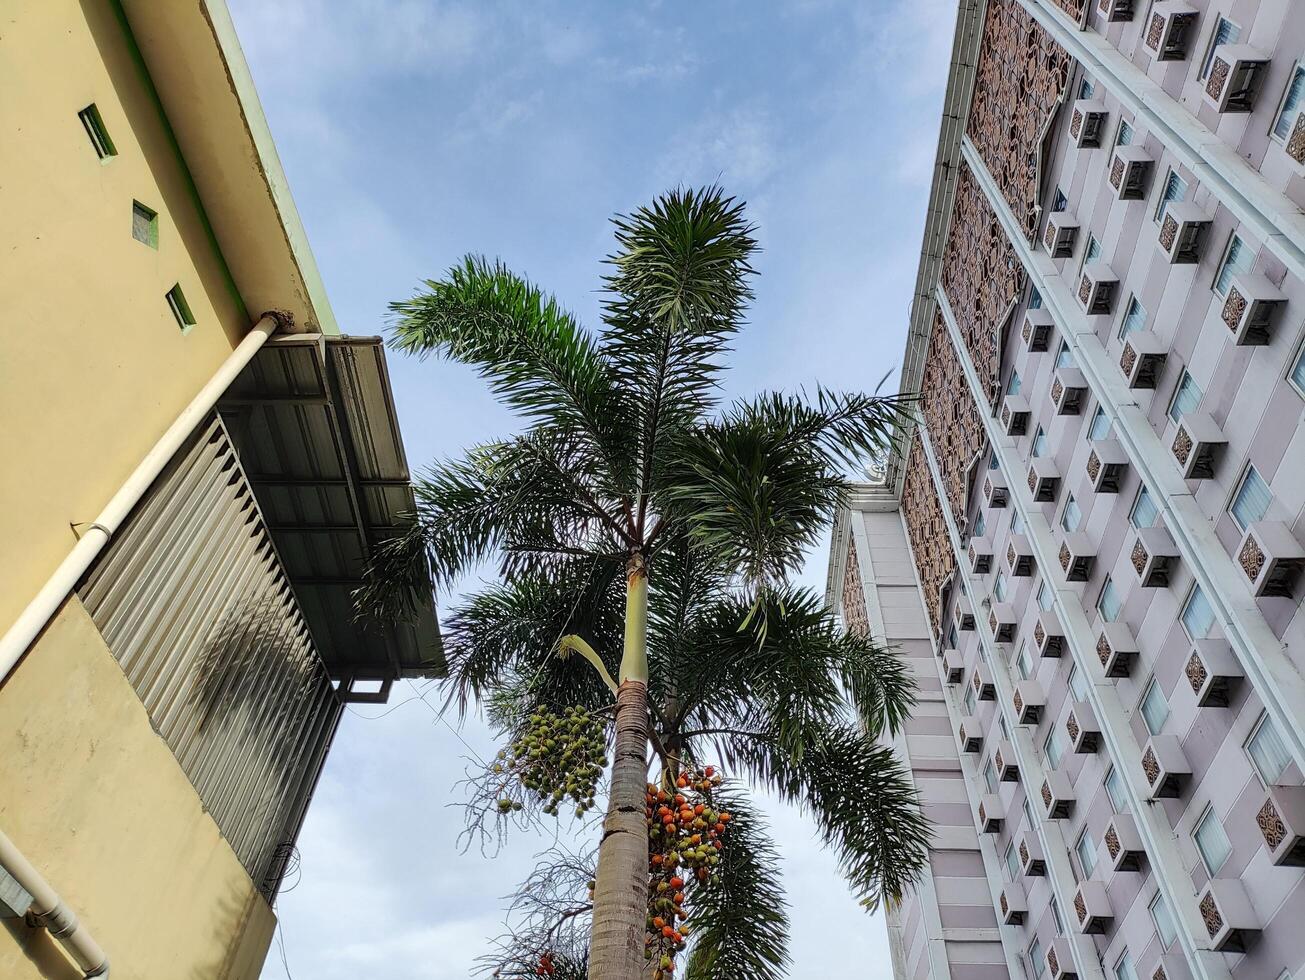 baixo ângulo Visão do Palma plantas em pé alta entre a edifícios foto